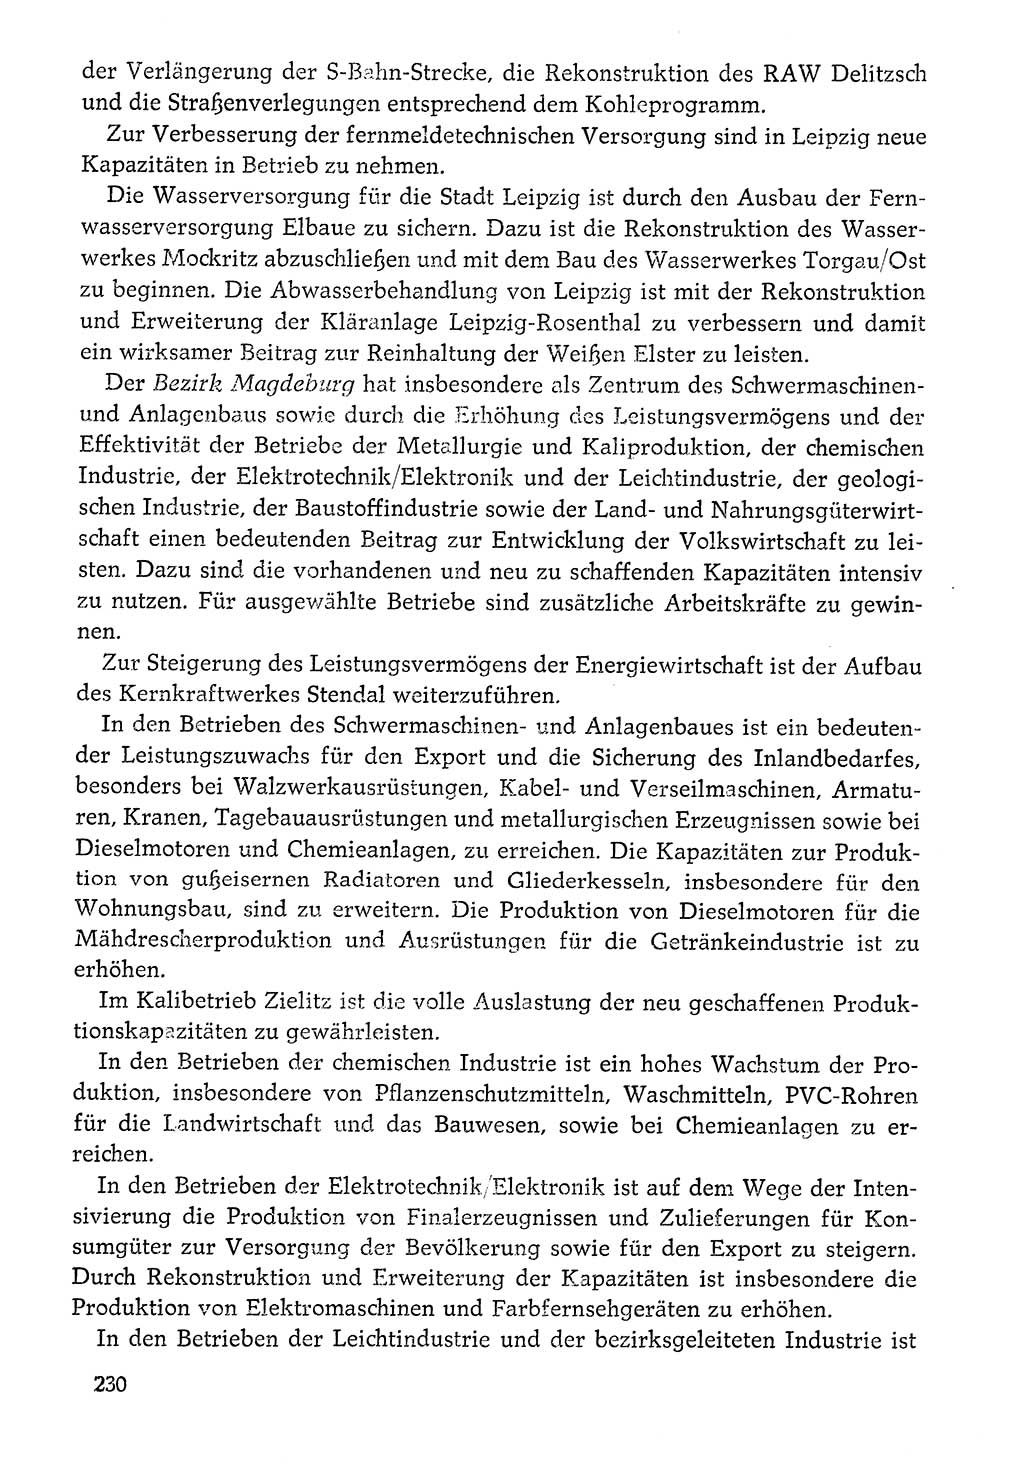 Dokumente der Sozialistischen Einheitspartei Deutschlands (SED) [Deutsche Demokratische Republik (DDR)] 1976-1977, Seite 230 (Dok. SED DDR 1976-1977, S. 230)